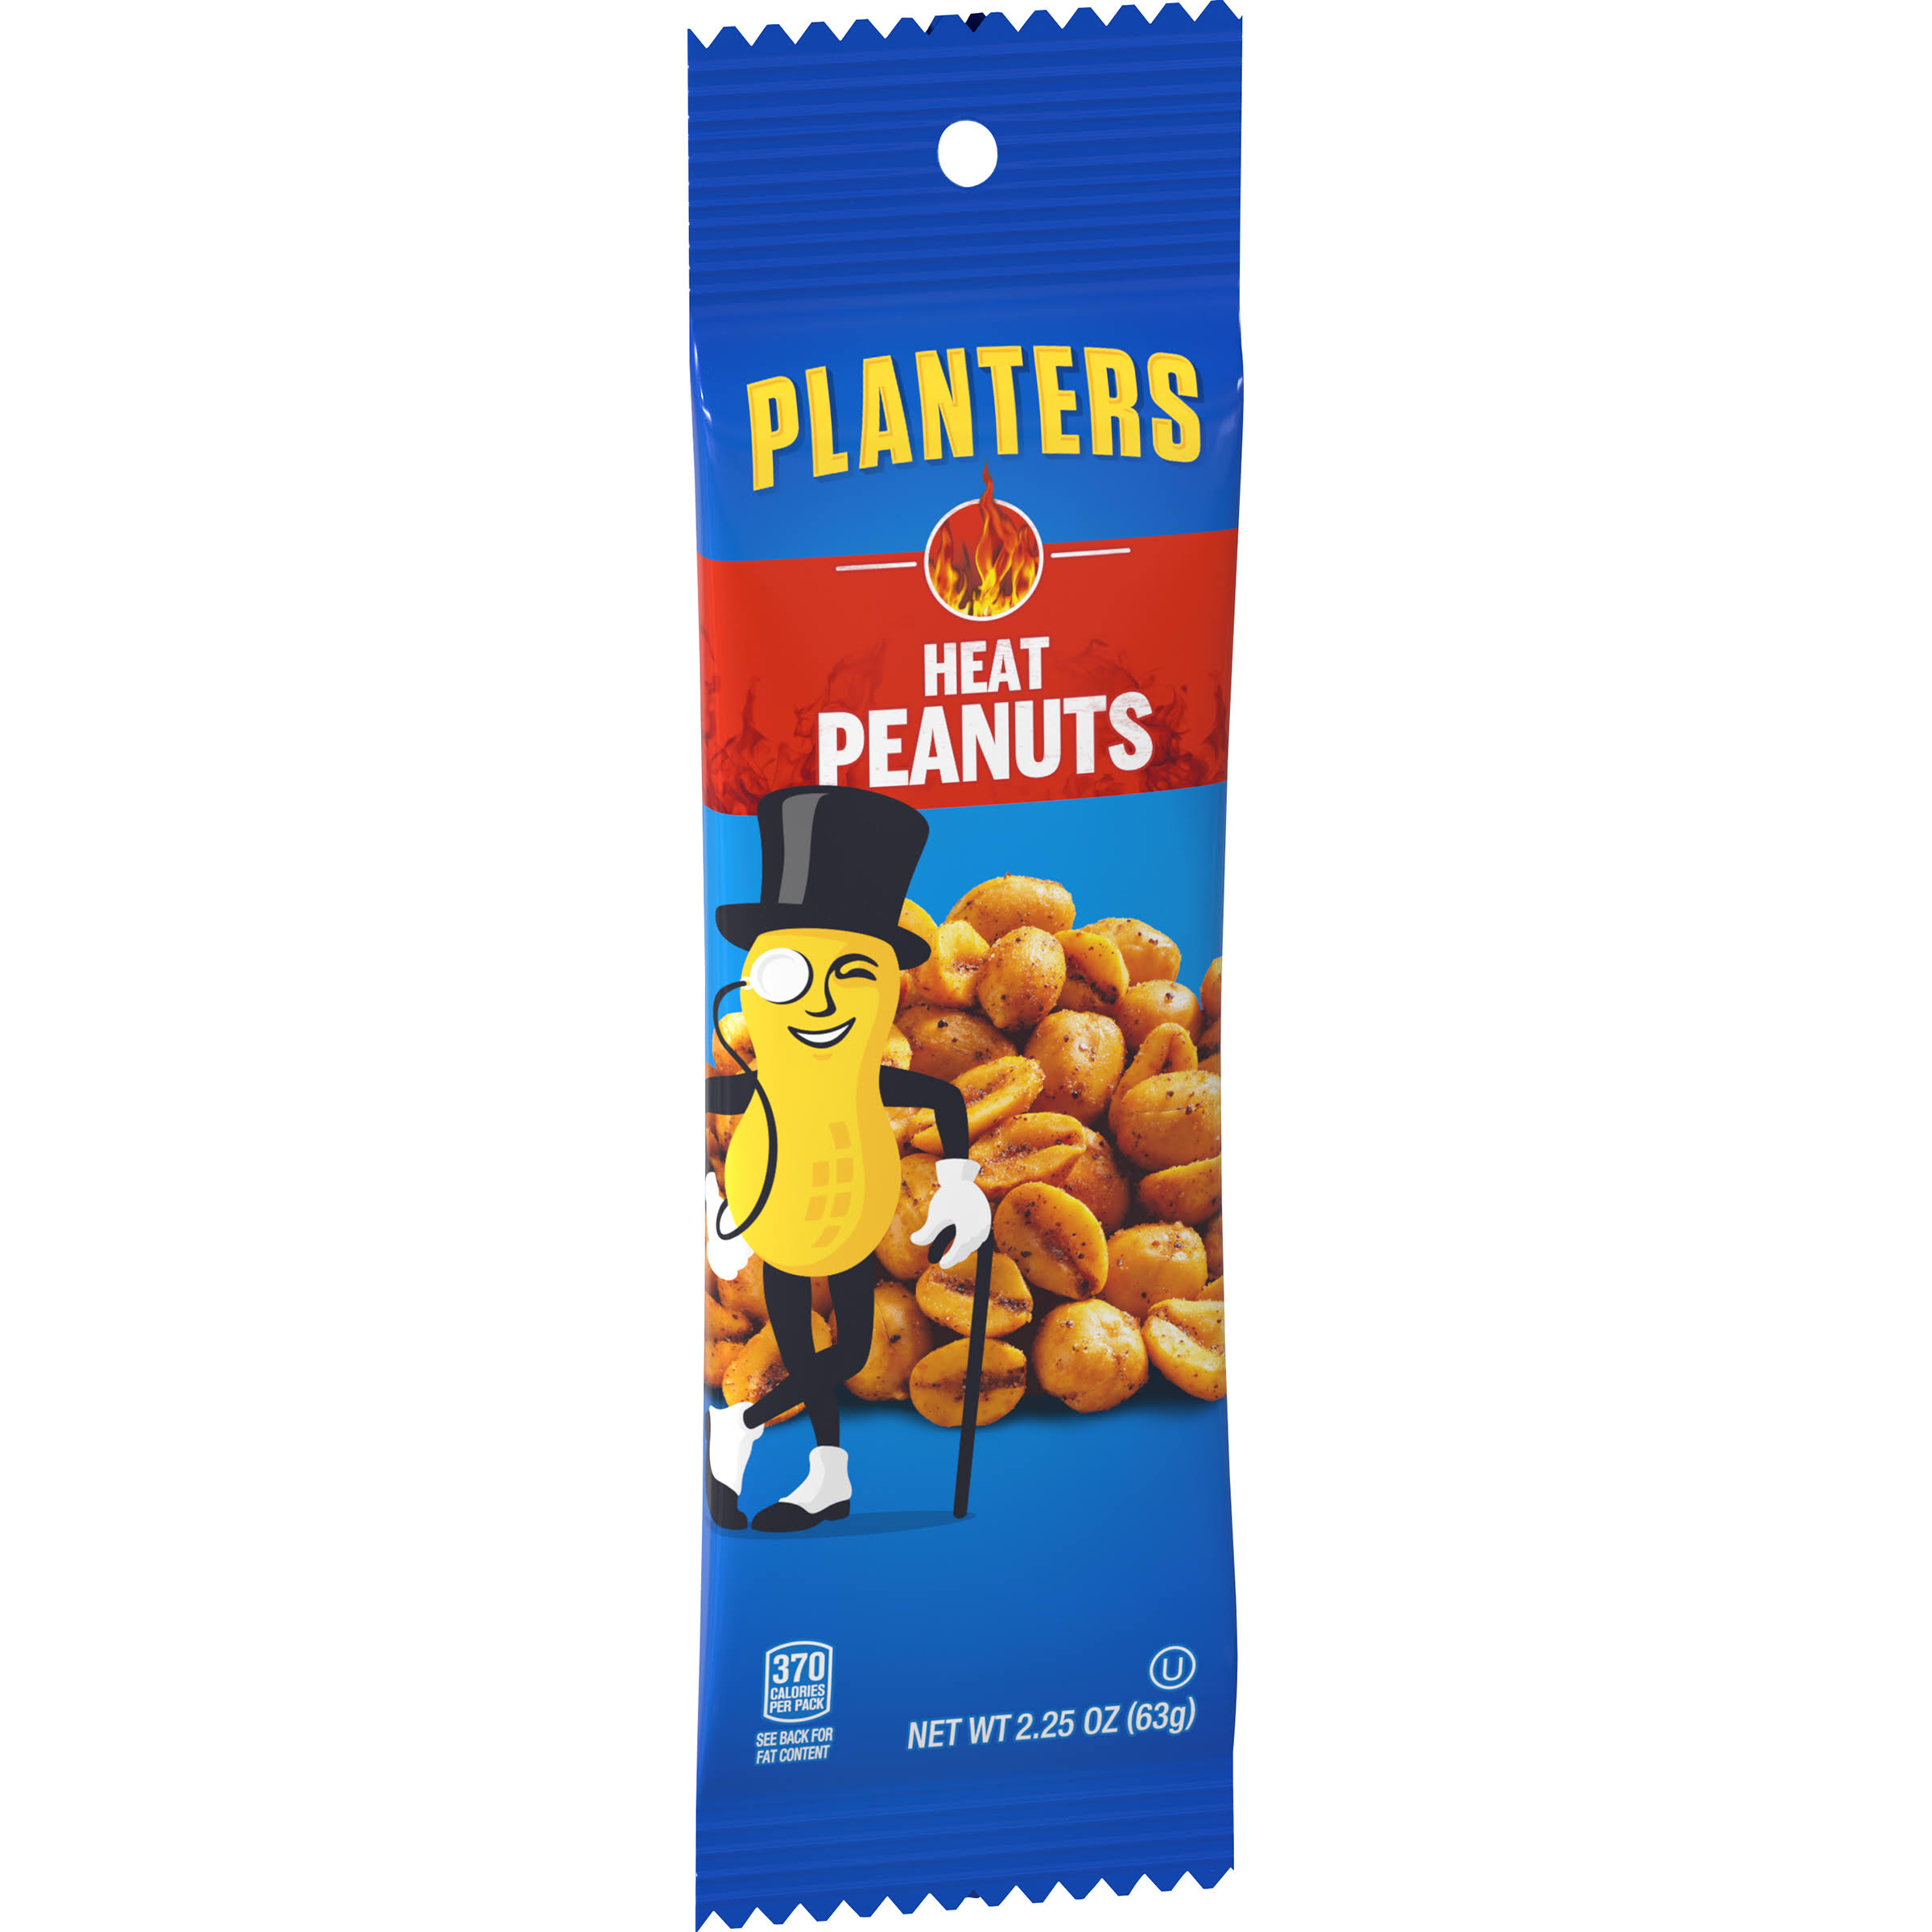 Planters Peanuts, Heat - 2.25 oz